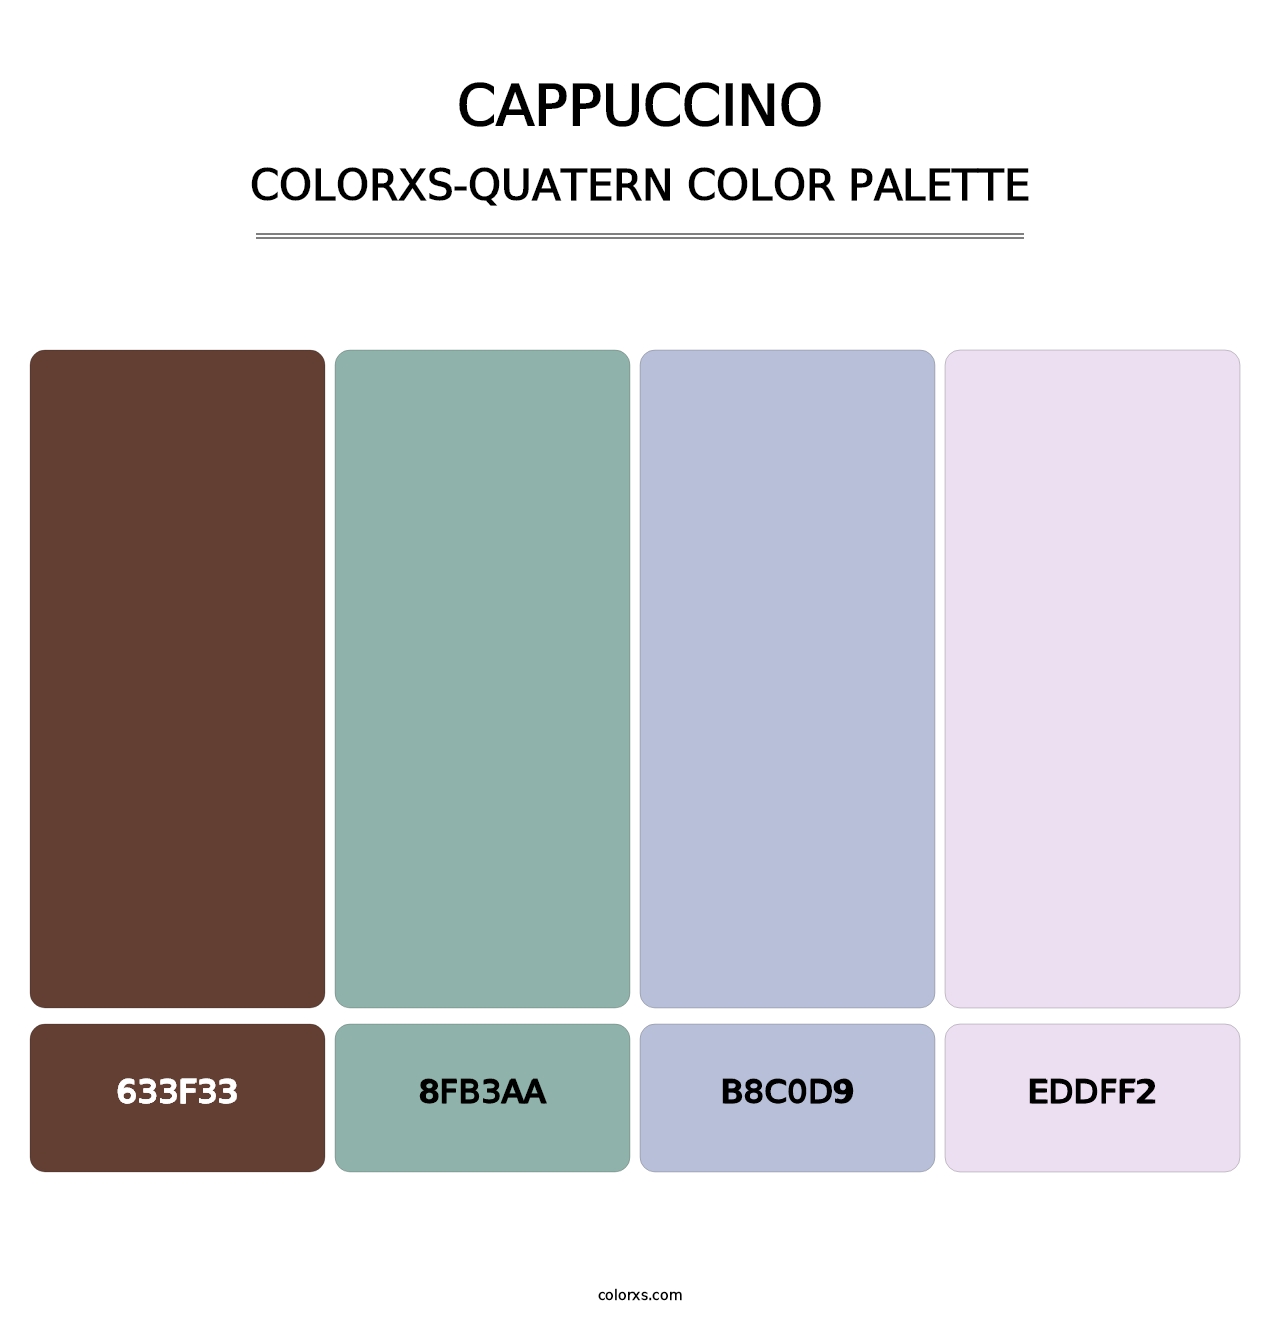 Cappuccino - Colorxs Quatern Palette